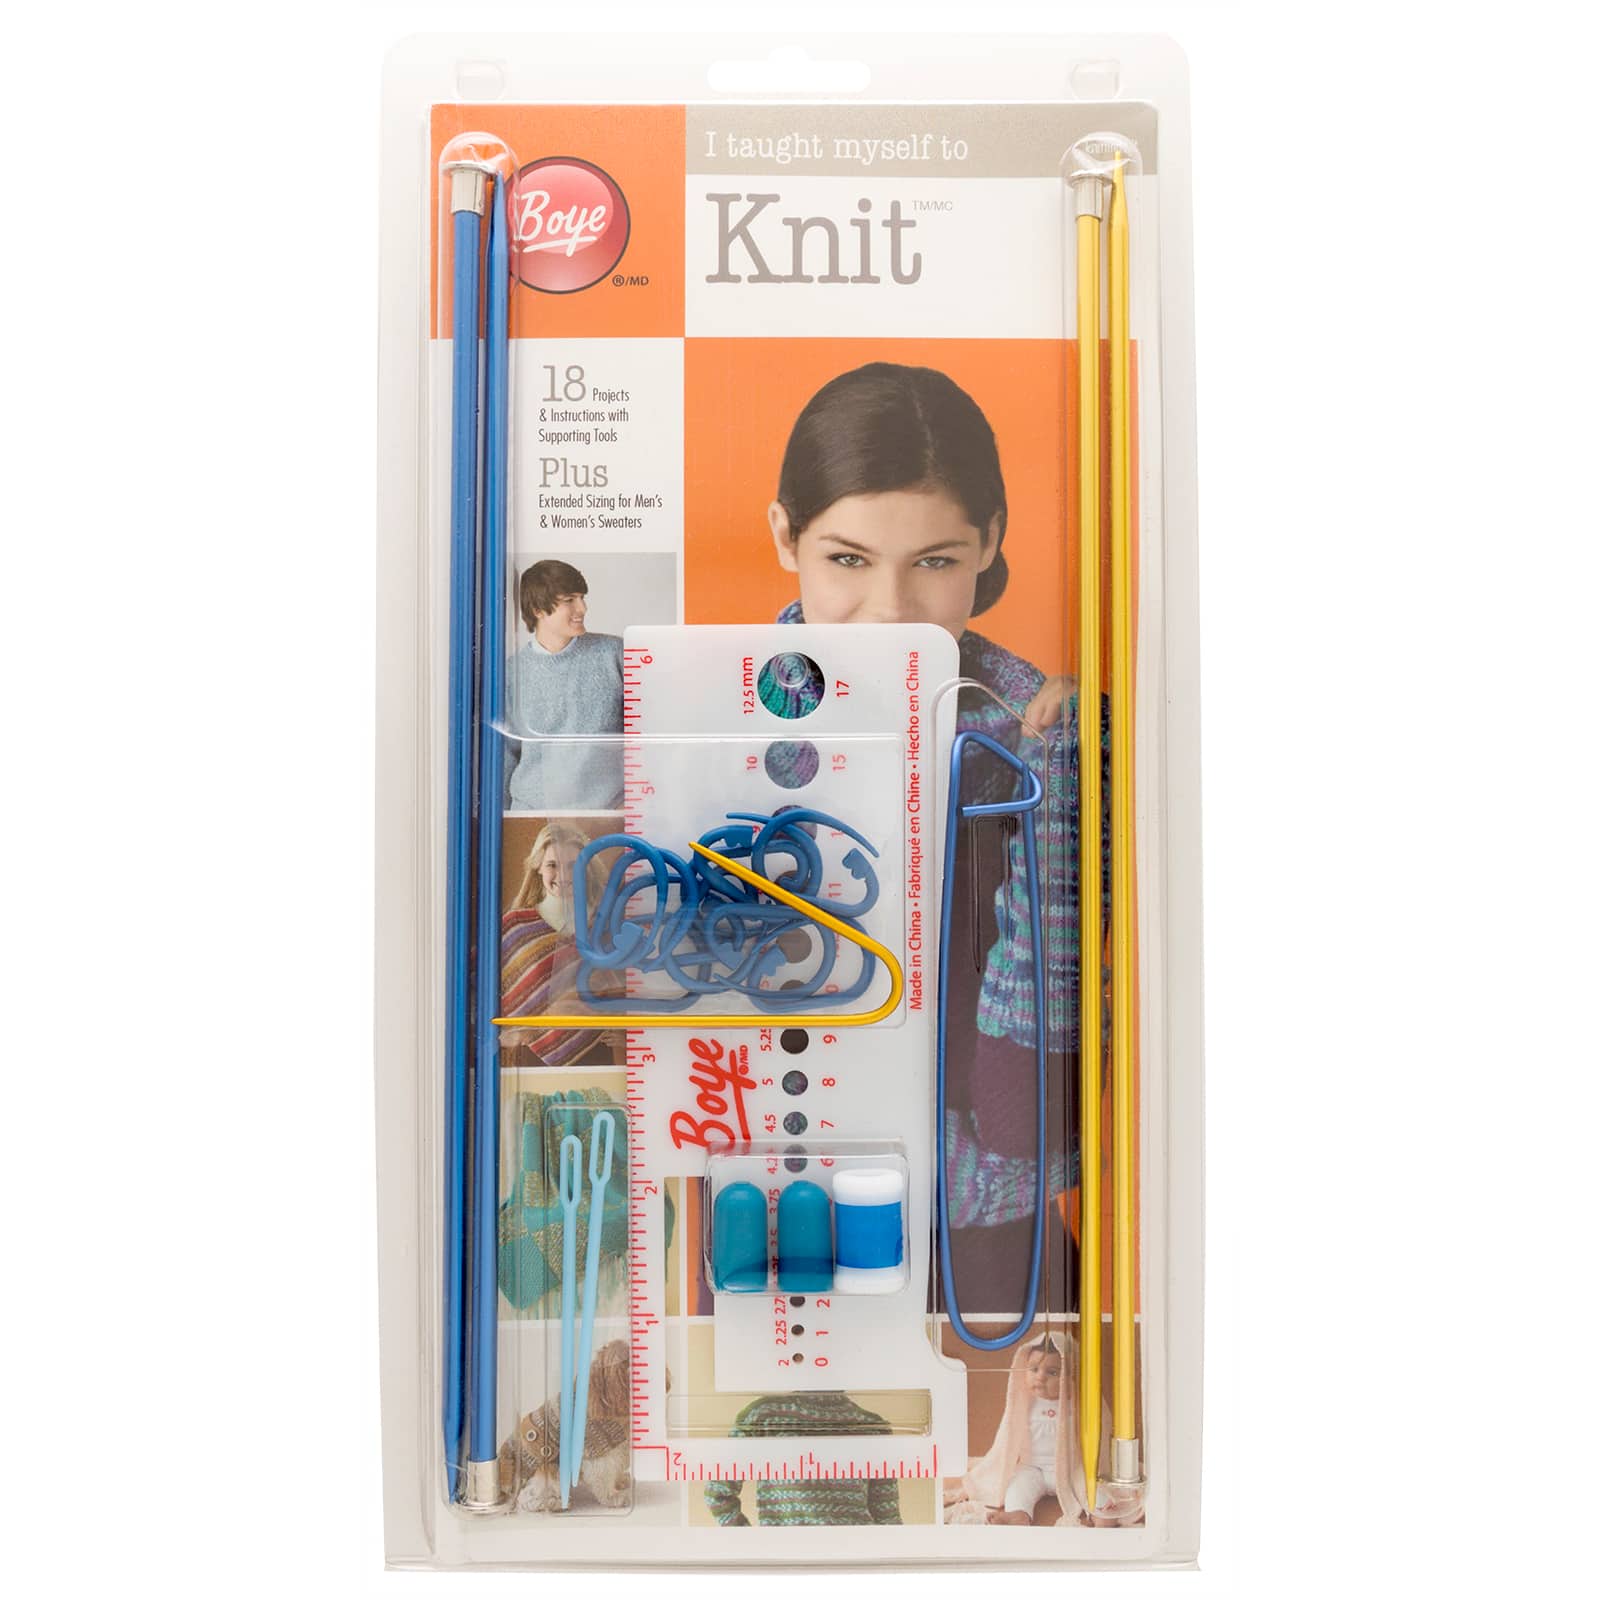 Boye I Taught Myself To Knit Kit